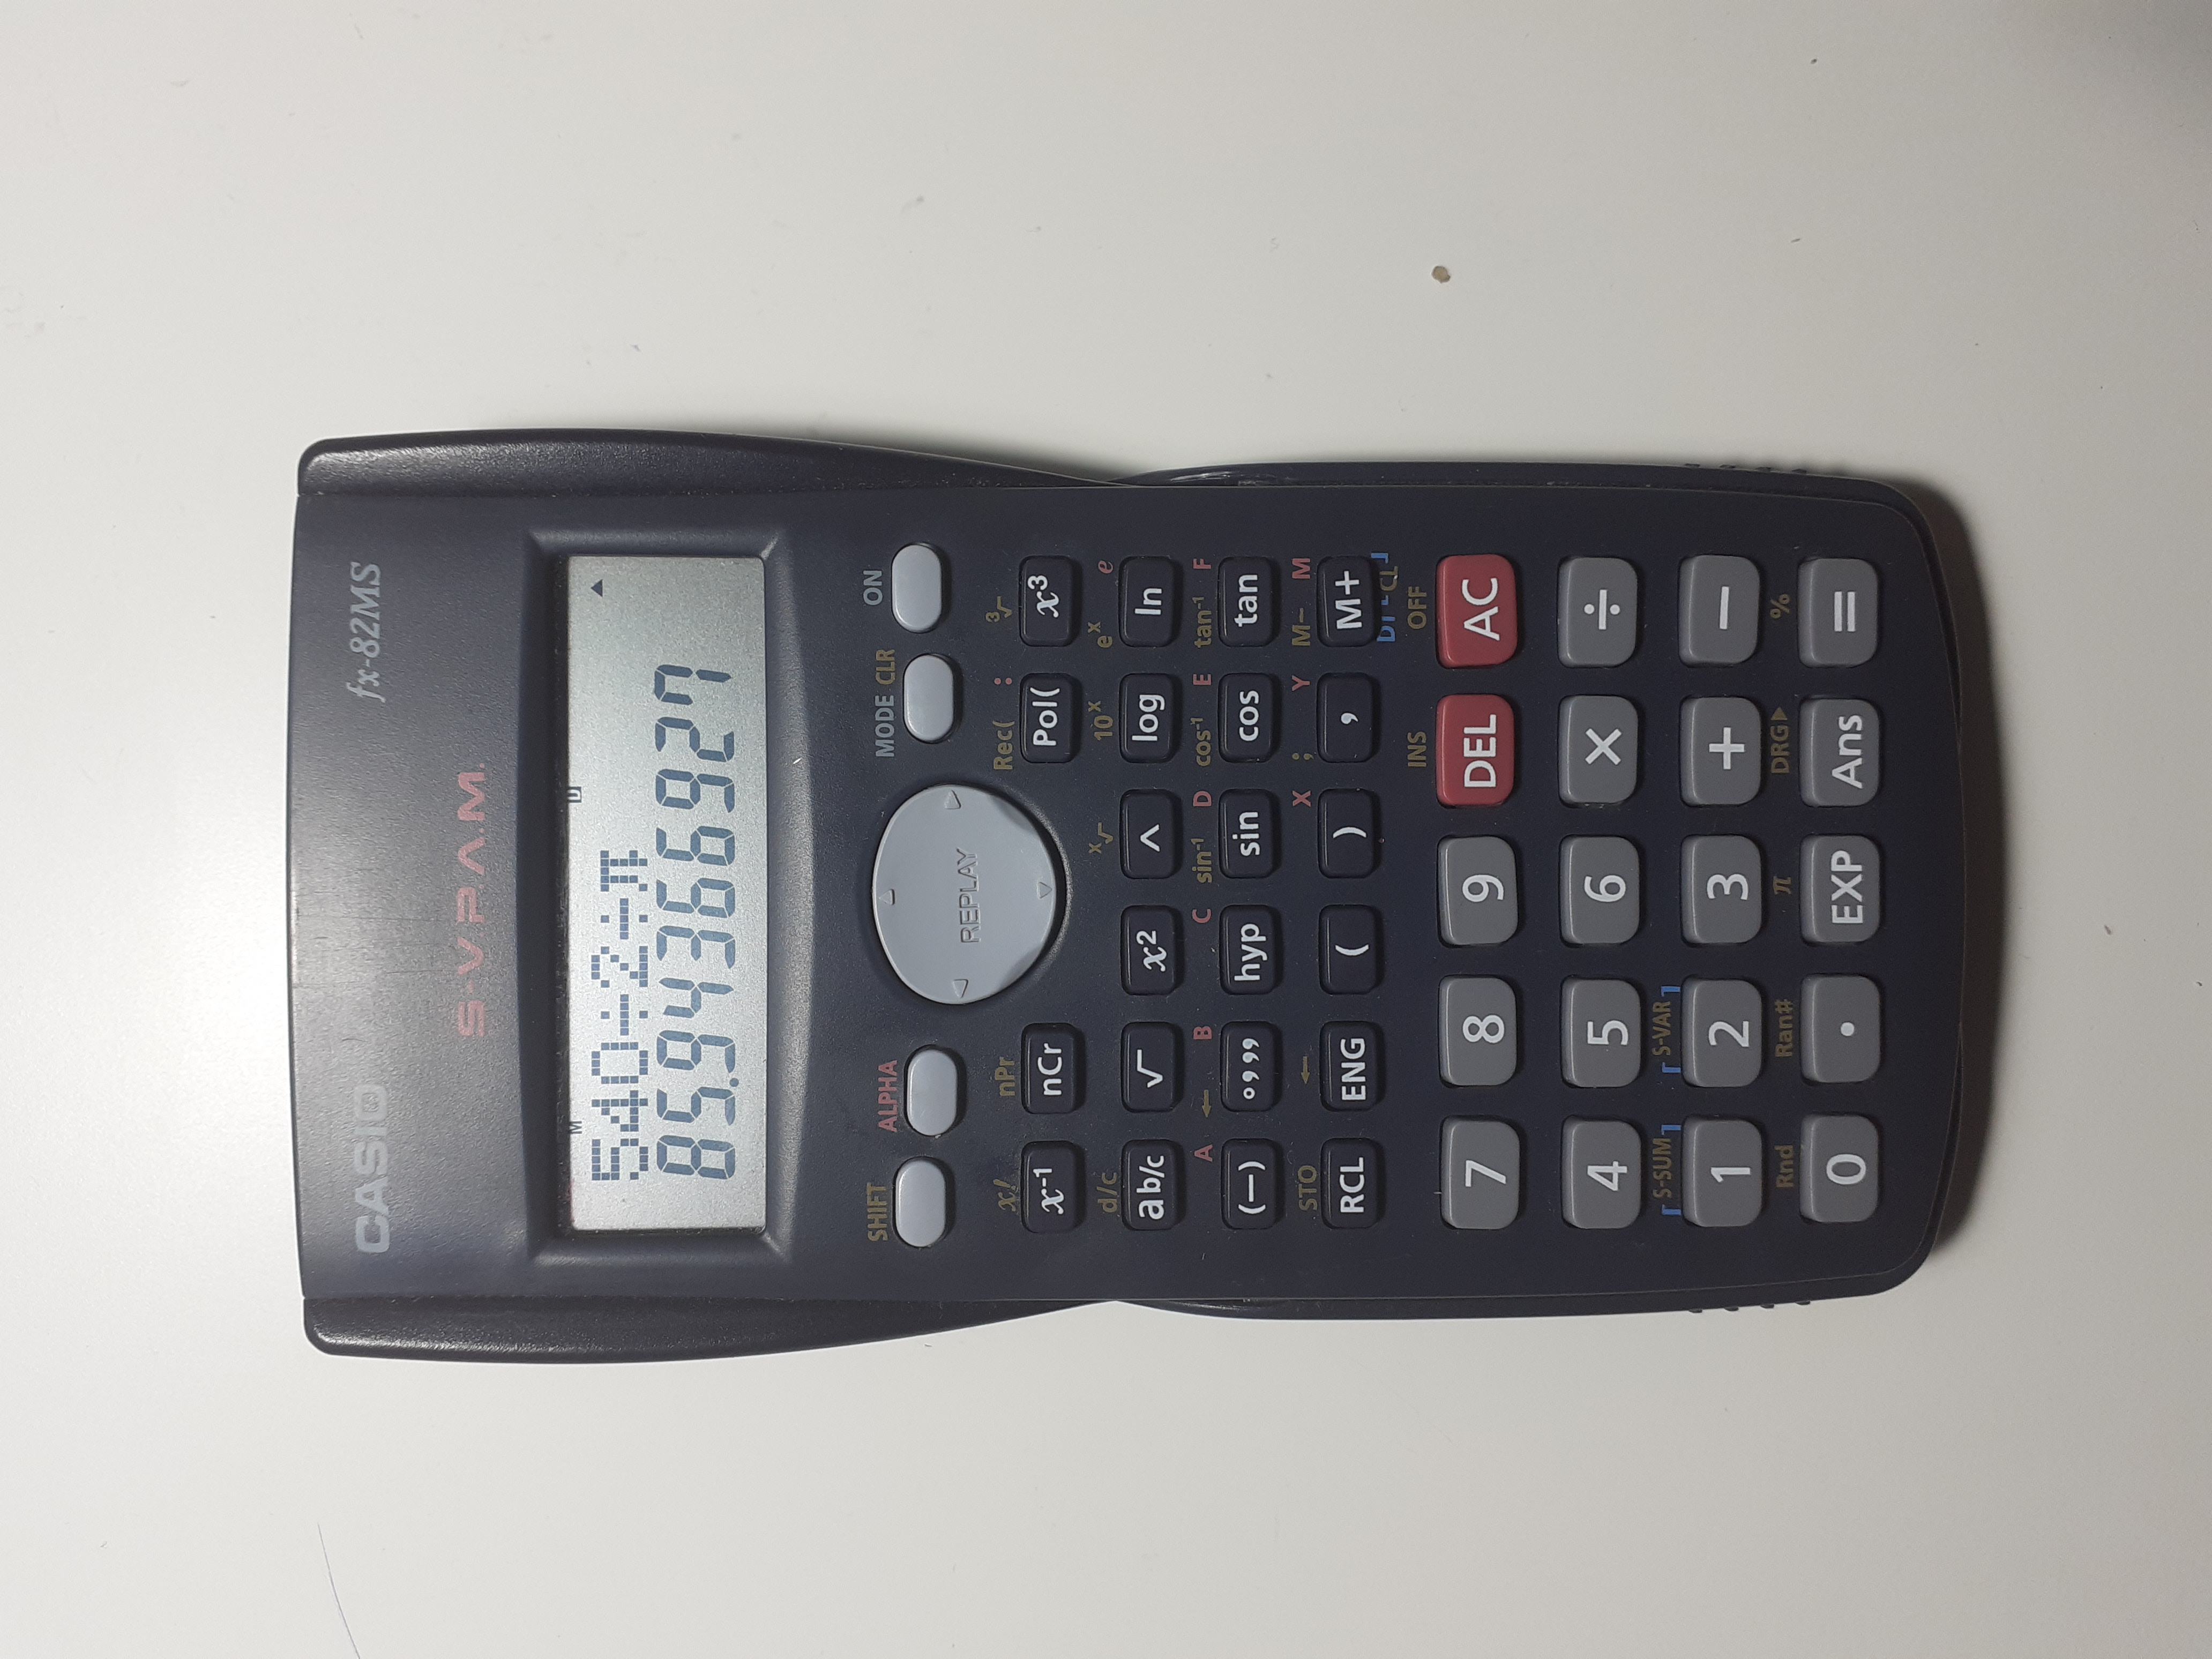 La imagen muestra una calculadora en grados